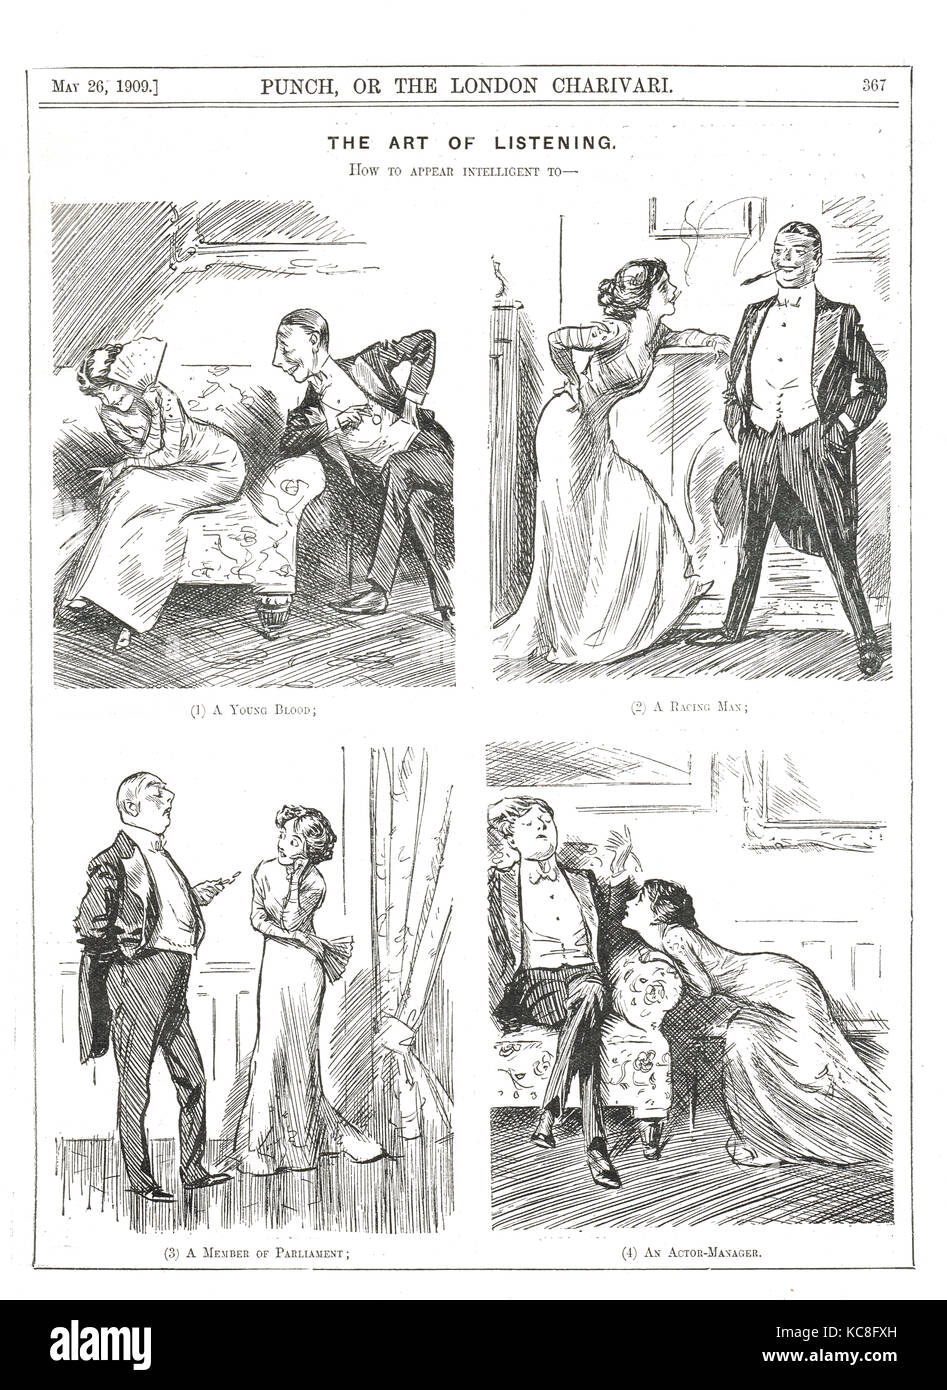 L'art de l'écoute, la façon d'apparaître intelligent à différents hommes, punch cartoon, 1909 Banque D'Images